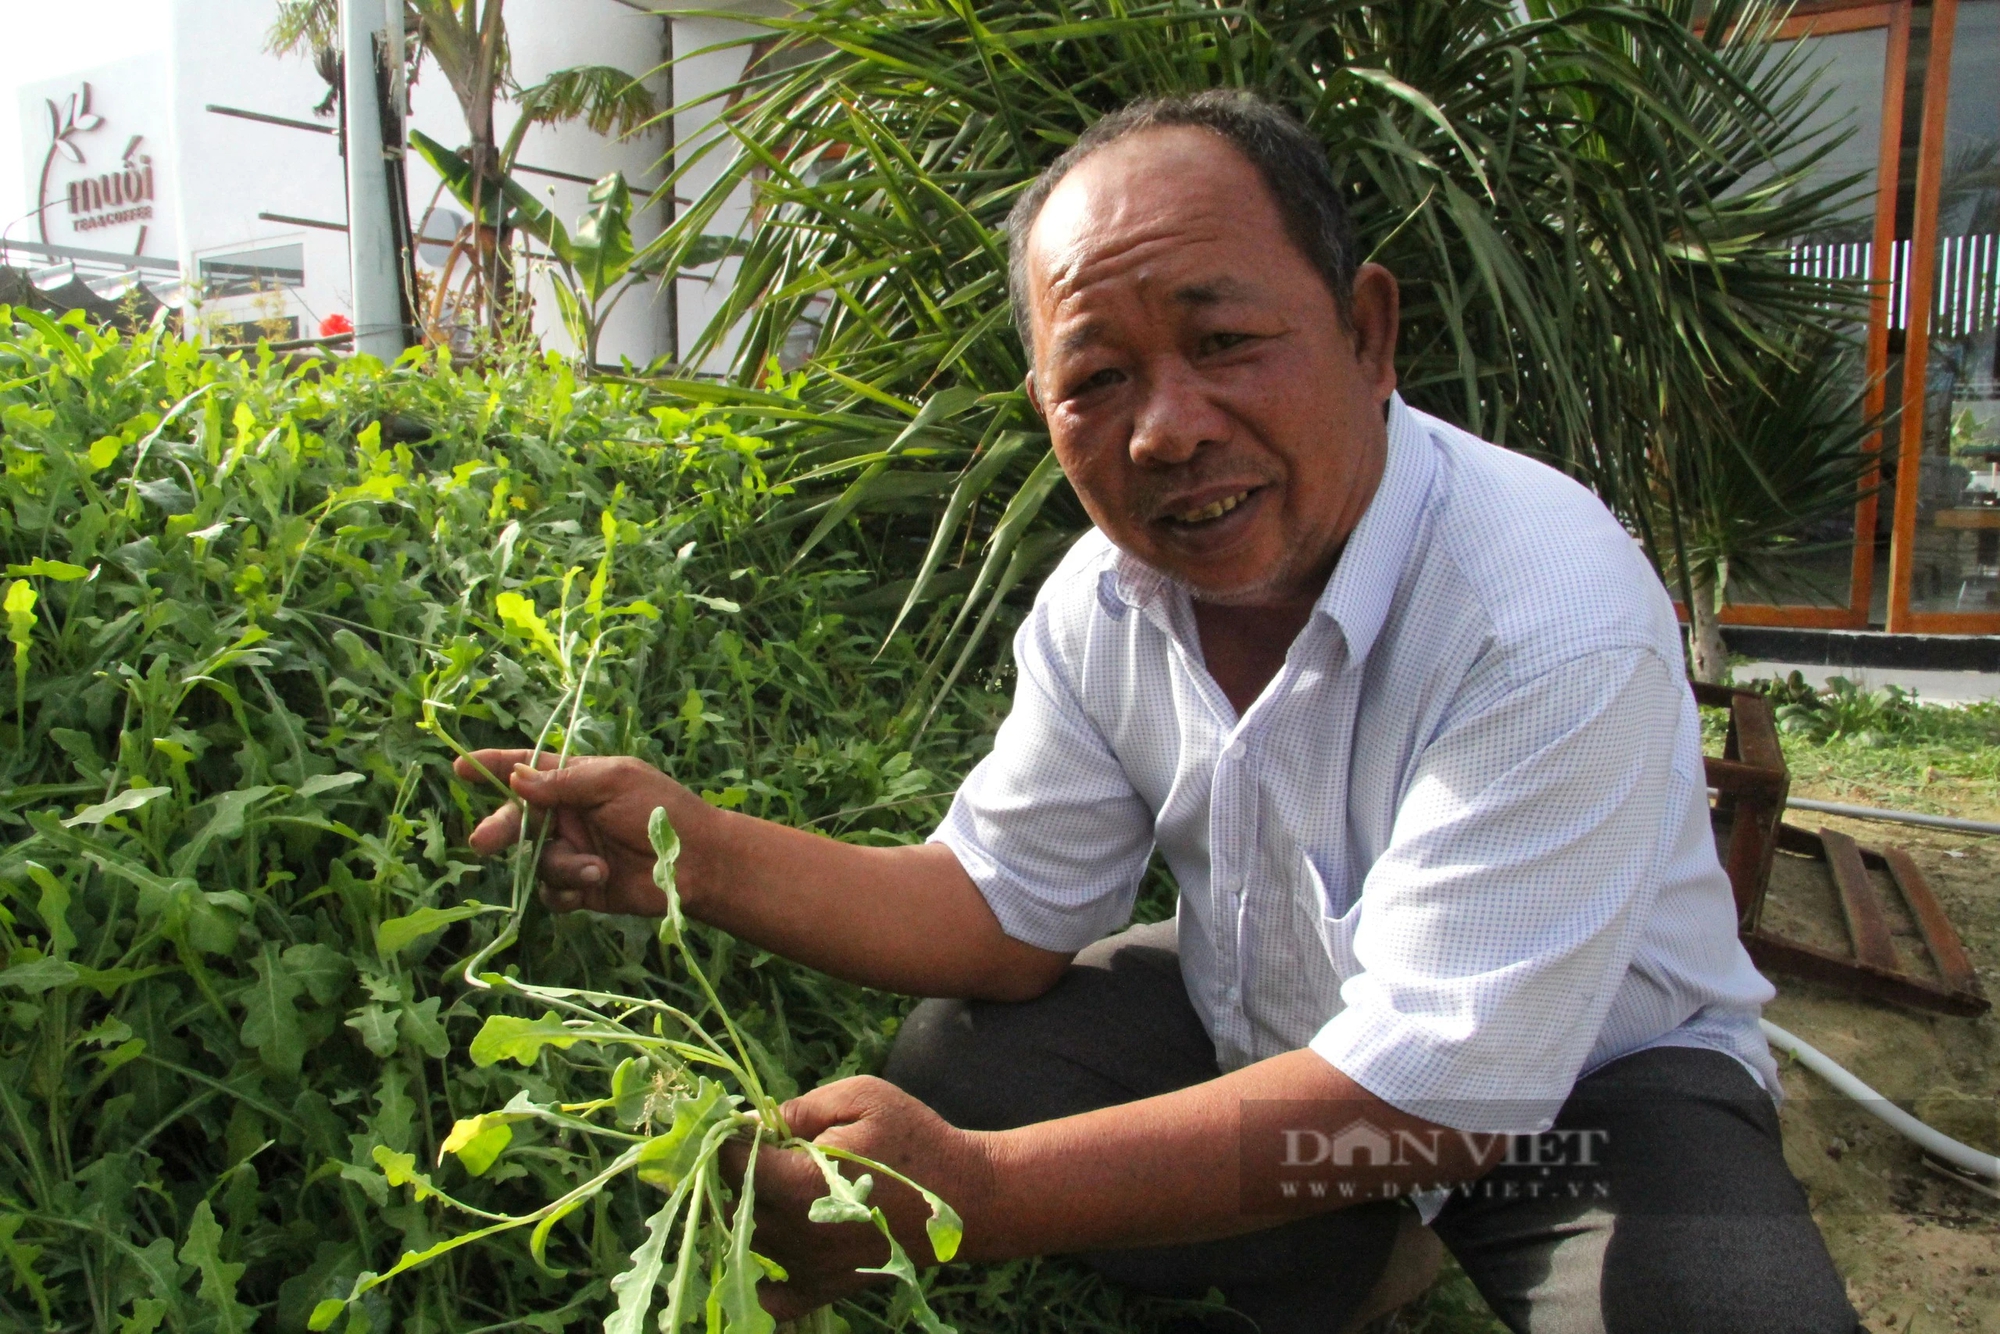 Loài rau dại mọc hoang ở đồi cát Ninh Thuận nay trở thành đặc sản, ăn ngon lại có tác dụng như thần dược- Ảnh 1.